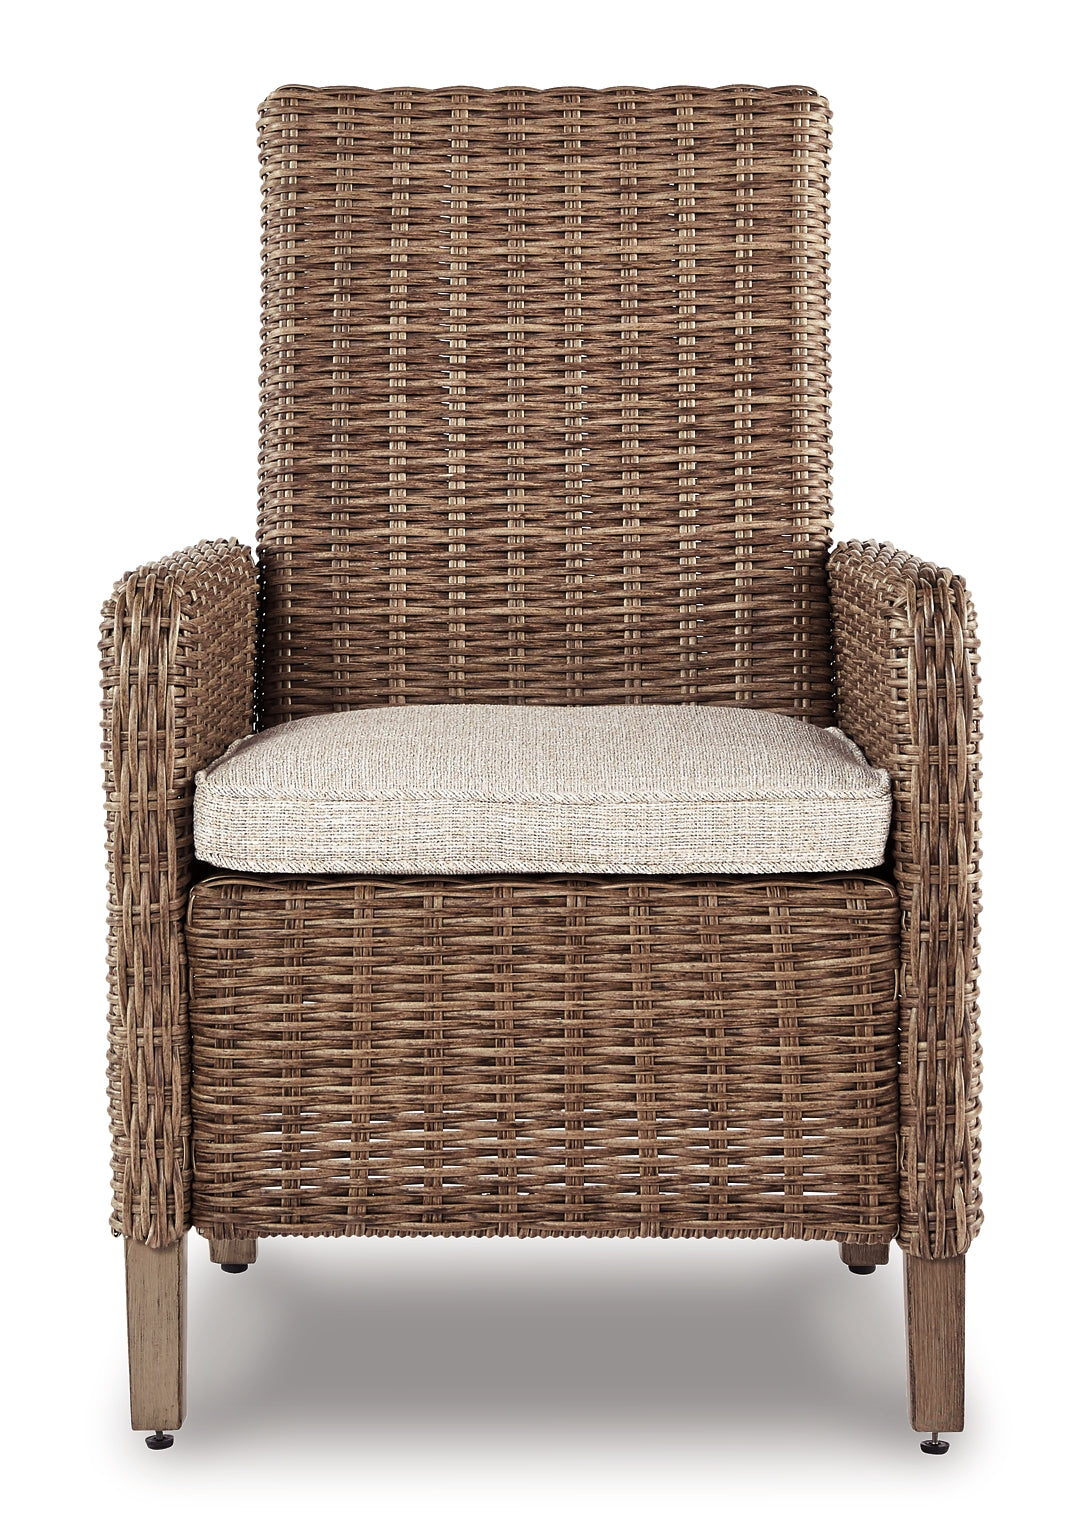 Beachcroft Arm Chair With Cushion (2/CN) JB's Furniture  Home Furniture, Home Decor, Furniture Store